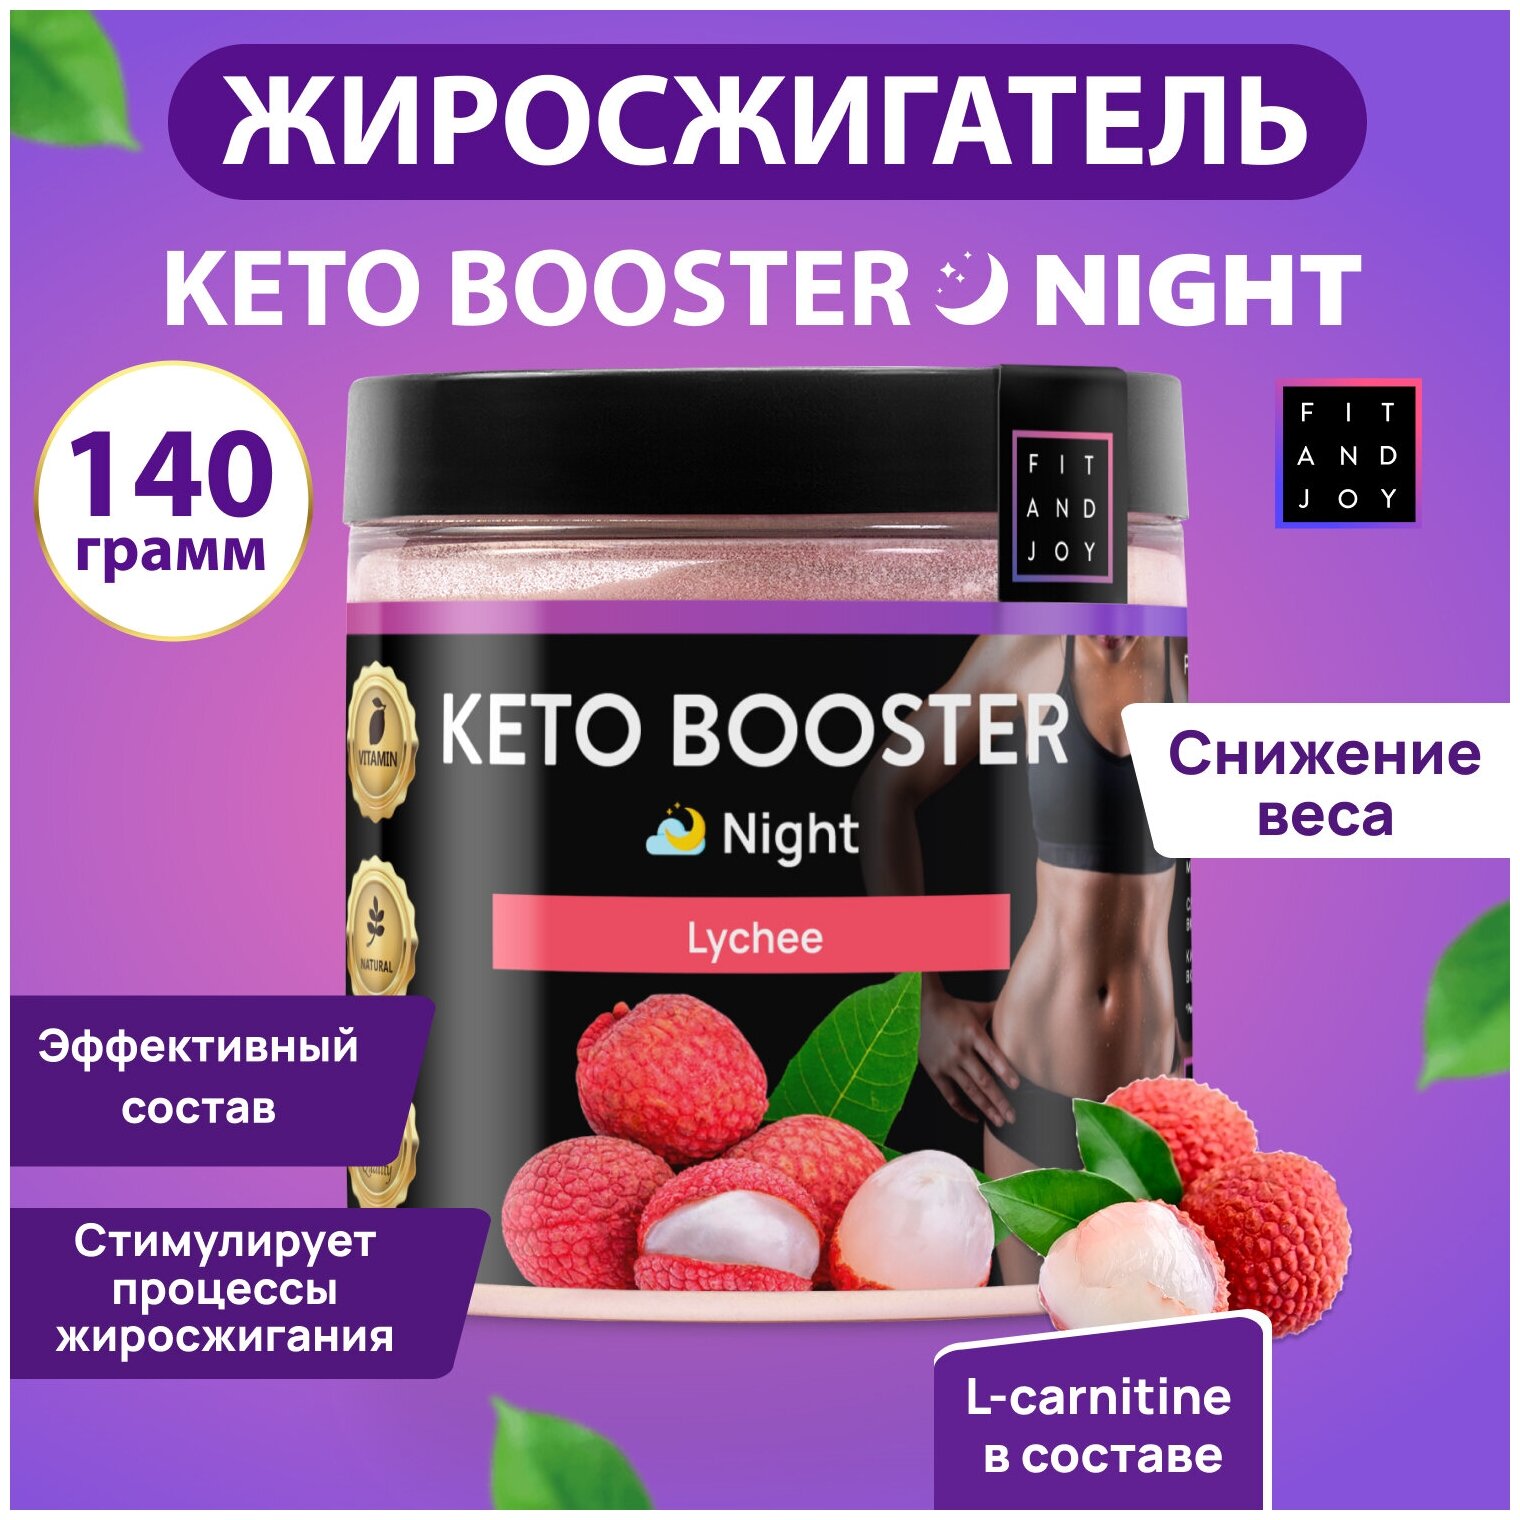 Keto-booster Ночной l-карнитин Похудение Сушка Fit and Joy спортивное питание жиросжигатель для похудения l-карнитин для снижения веса